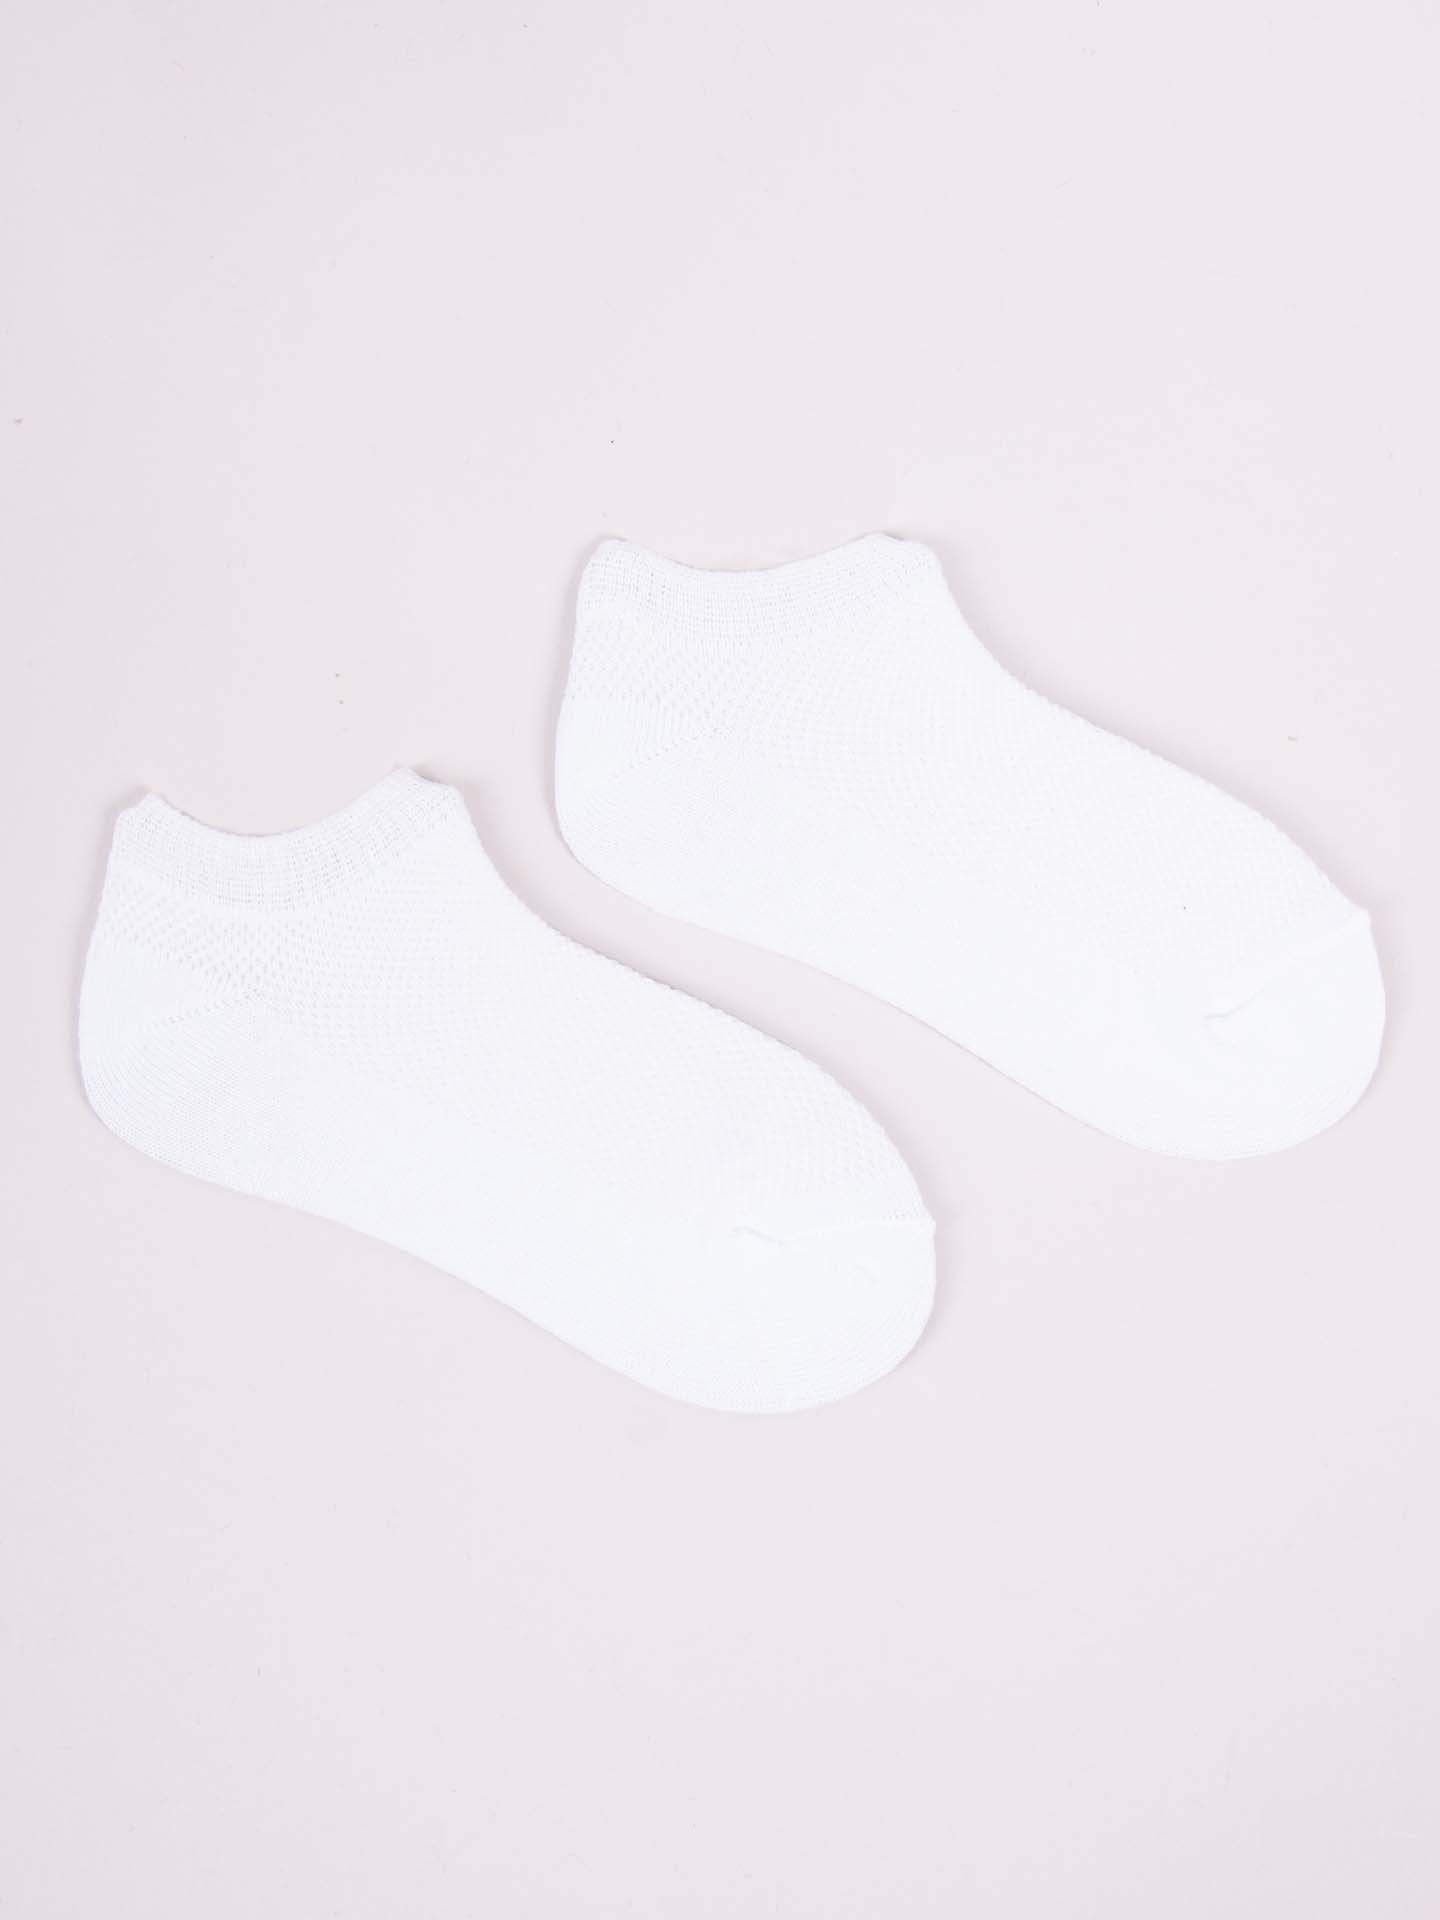 Yoclub Chlapecké kotníkové tenké bavlněné ponožky Basic Plain Colours 6-pack SKS-0027C-0000-002 Multicolour 39-42